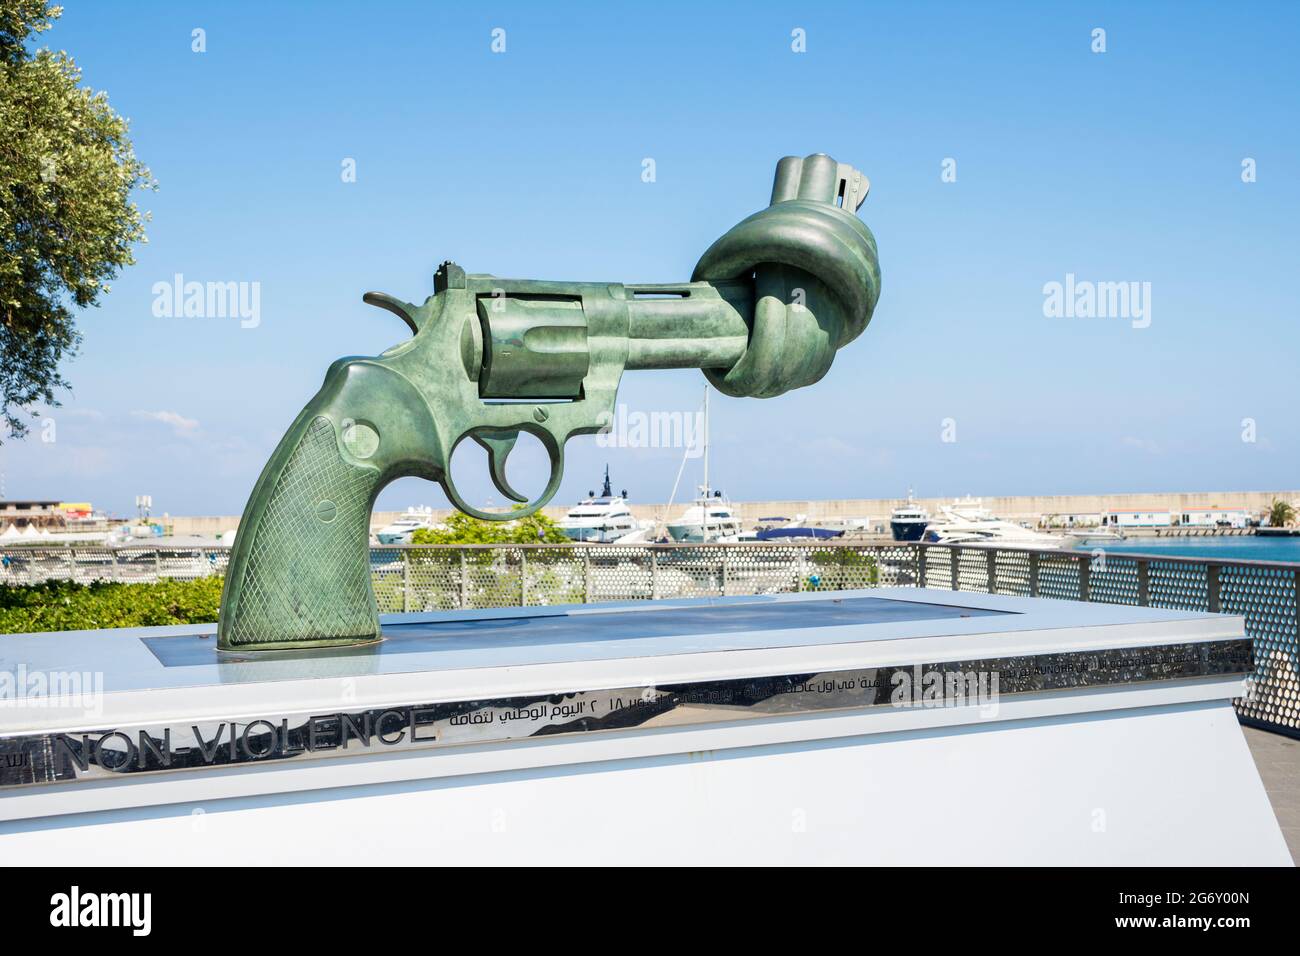 Sculpture de non-violence ou de canon à nœuds par l'artiste suédois Carl Fredrik Reutersward à la baie de Zaitunay, Beyrouth, Liban Banque D'Images